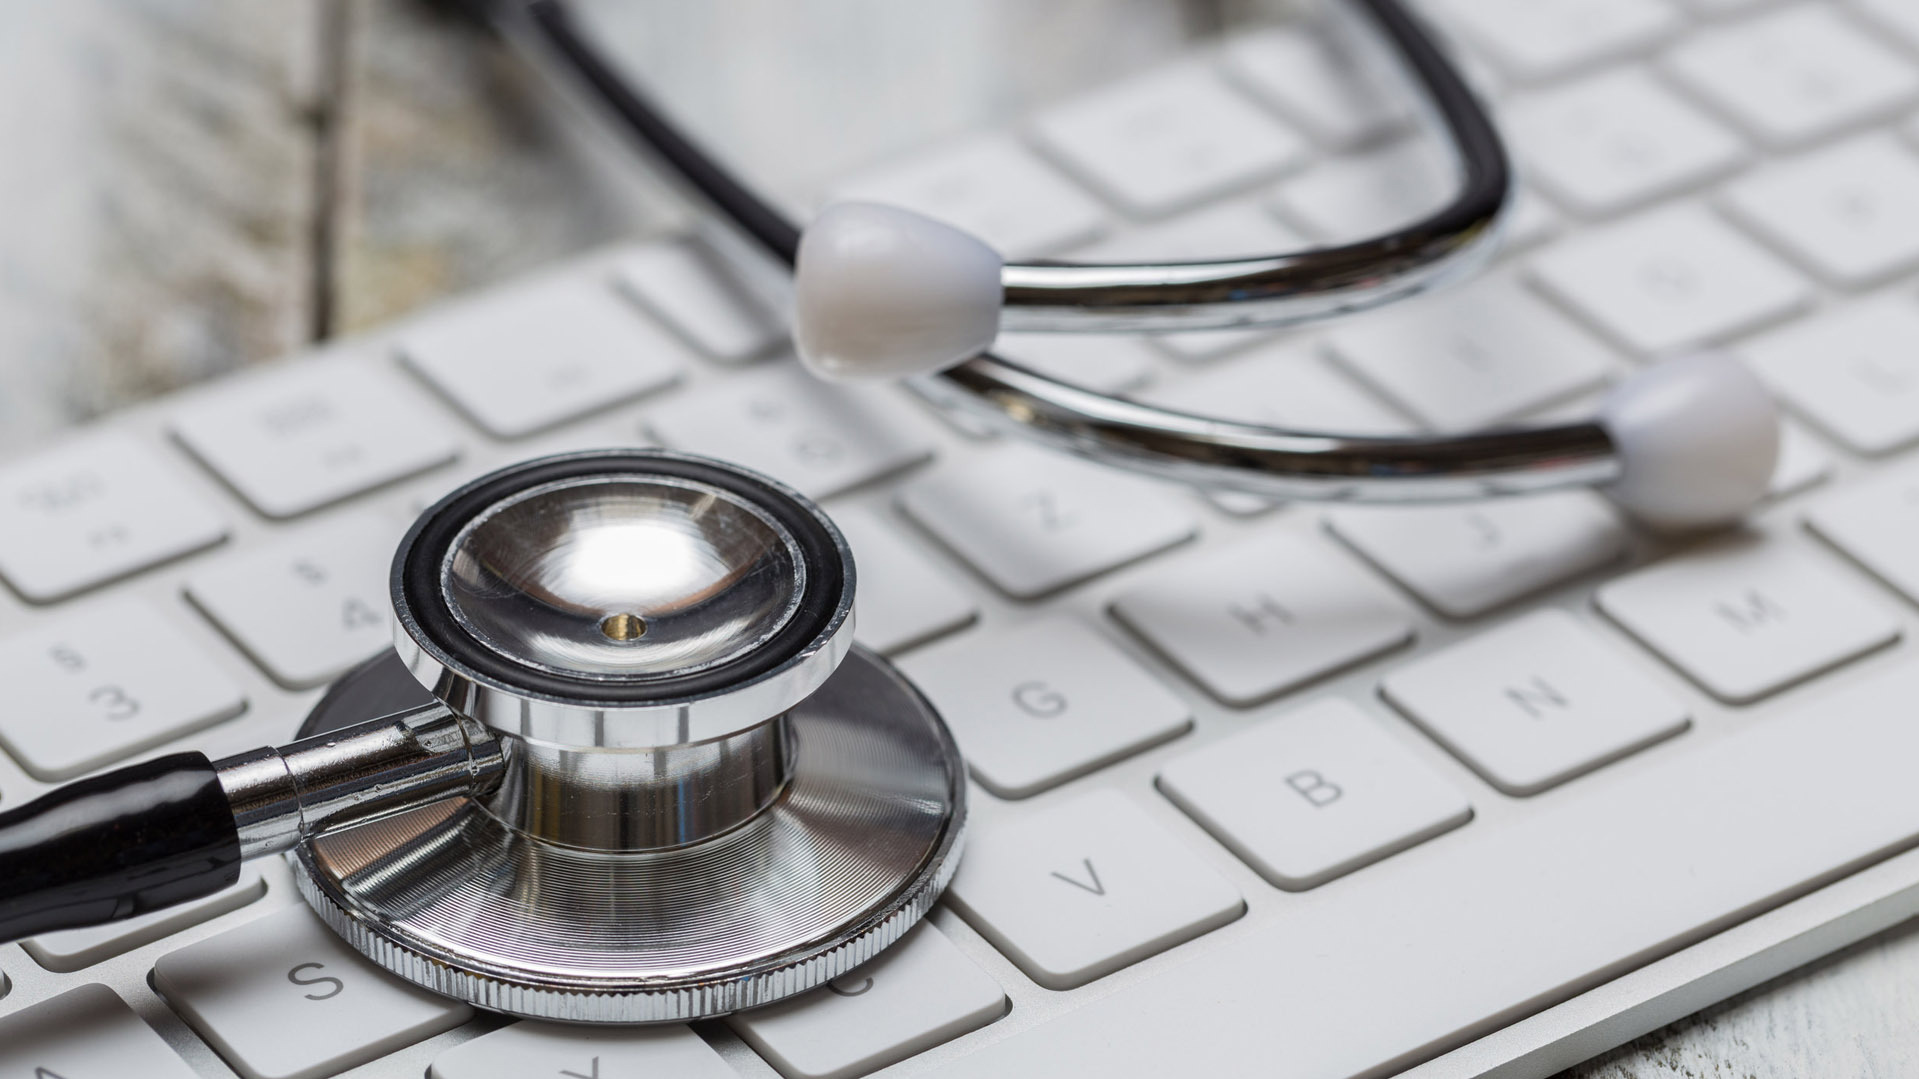 Digitalisierung des Gesundheitswesens braucht mehr als DigiSanté